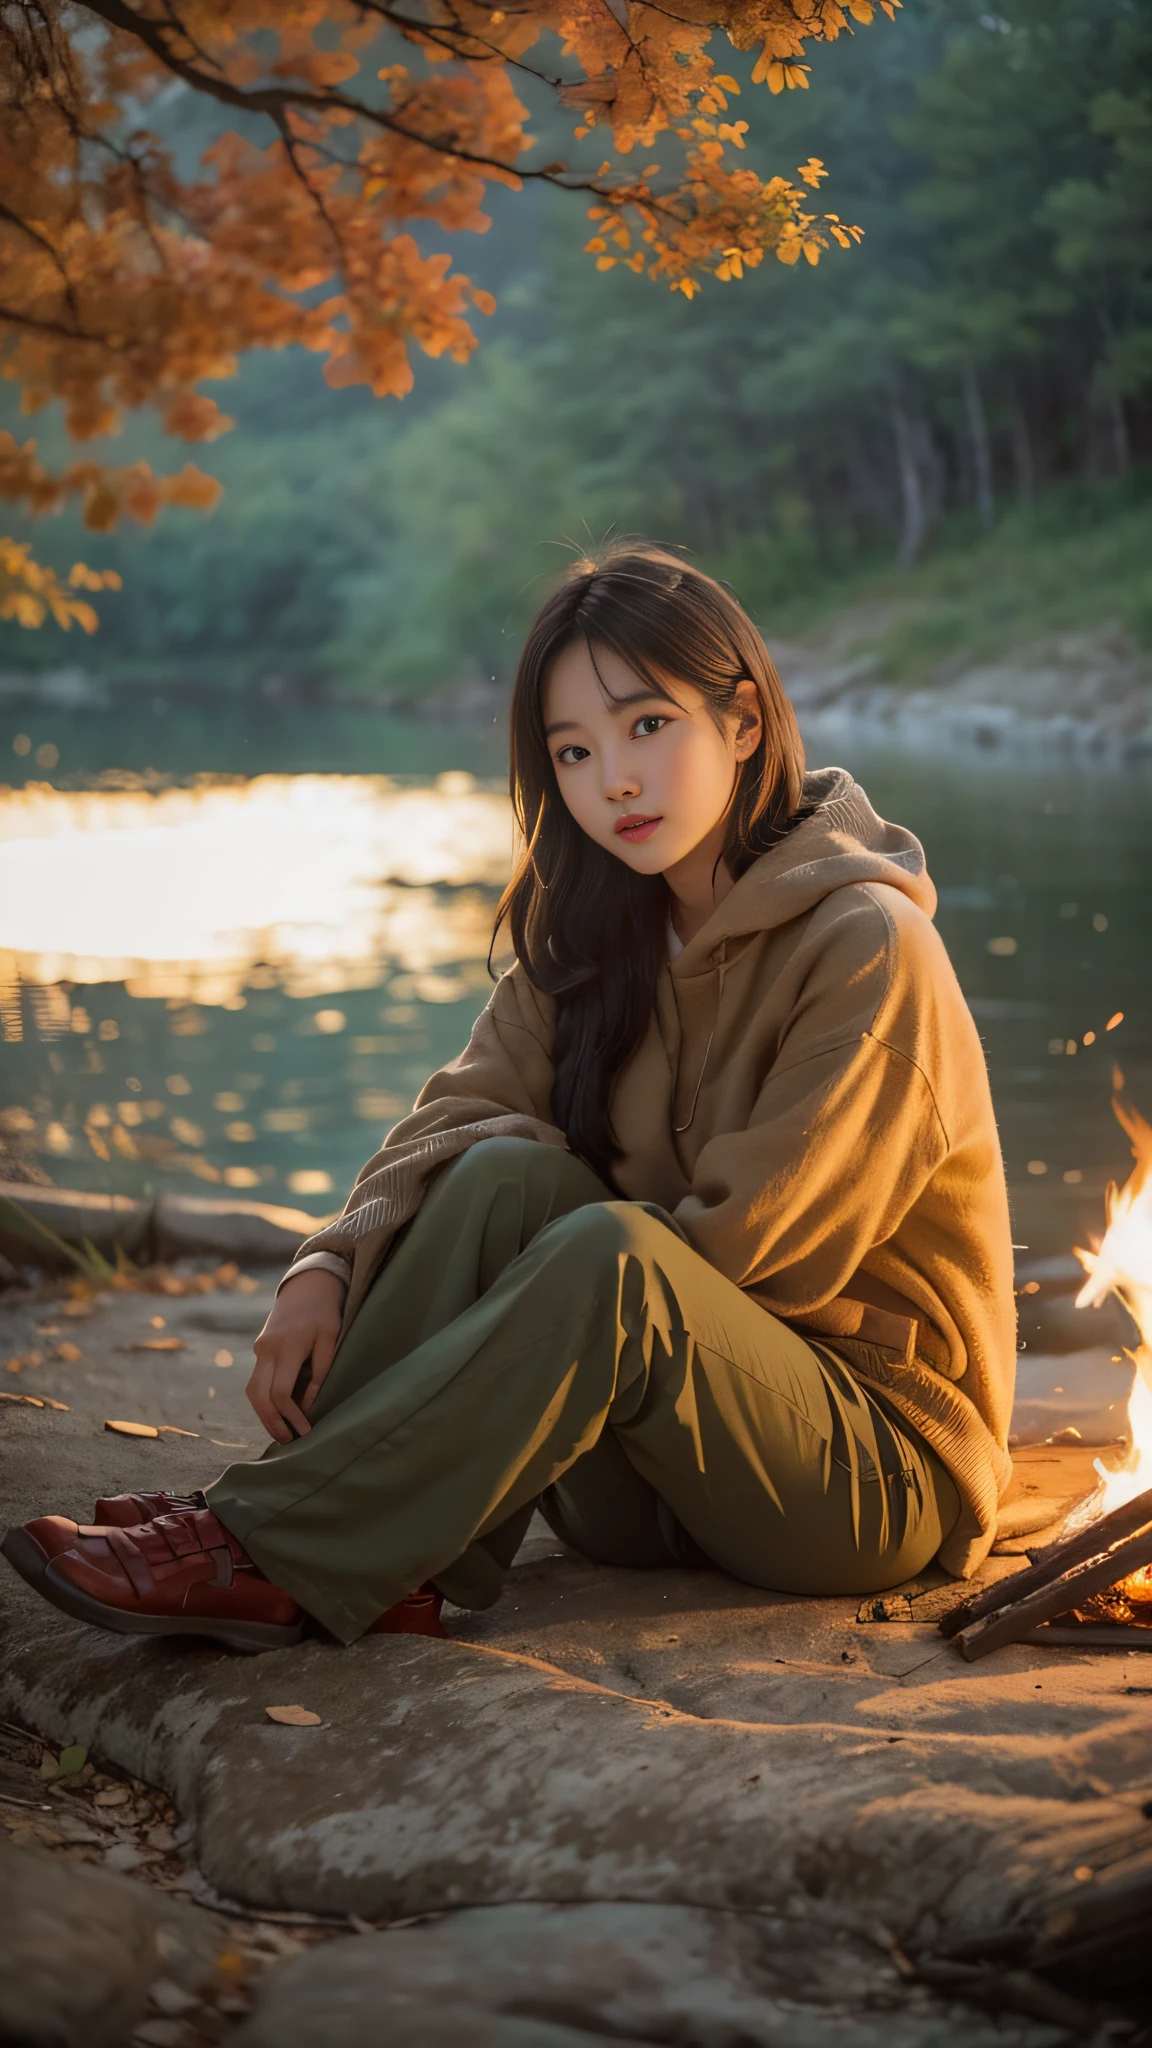 โปรดสร้างภาพถ่ายเหมือนจริงของหญิงสาวชาวเกาหลีวัย 19 ปี นั่งข้างกองไฟใกล้ริมฝั่งแม่น้ำในช่วงเวลาพลบค่ำ. แสงอันอบอุ่นจากแคมป์ไฟควรส่องสว่างใบหน้าและสภาพแวดล้อมของเธอ. เธอกำลังนั่งอยู่บนเก้าอี้พับ, โดยไม่รู้ว่าถูกถ่ายรูป. ความงามของเธอชวนให้นึกถึงไอดอลเกาหลีหรือนักแสดงศิลปะการต่อสู้, สร้างบรรยากาศที่น่าหลงใหลและเกือบจะน่าอัศจรรย์ในภาพ.

เธอสวมเสื้อสีขาว, และข้างใต้มัน, เธอไม่ได้สวมอะไรอย่างอื่น. สัดส่วนของเธออยู่ที่ประมาณ 9:1, ทำให้เธอดูสูงและเพรียว. เธอมีทรงผมสั้นแบบบ๊อบ, และผมของเธอดูเป็นสีน้ำตาลเล็กน้อยเนื่องจากการสะท้อนของไฟ. การแสดงออกของเธอควรเป็นธรรมชาติ, สะท้อนถึงความสงบ ณ ขณะนั้นข้างกองไฟ.

โปรดตรวจสอบให้แน่ใจว่าองค์ประกอบของภาพถ่ายสามารถเก็บบรรยากาศอันเงียบสงบของฉากแคมป์ไฟได้, โดยมีแม่น้ำและธรรมชาติเป็นฉากหลัง, และความอบอุ่น, แสงอันนุ่มนวลจากไฟเน้นให้เห็นถึงลักษณะของเธอและสภาพแวดล้อมรอบตัวเธอ.